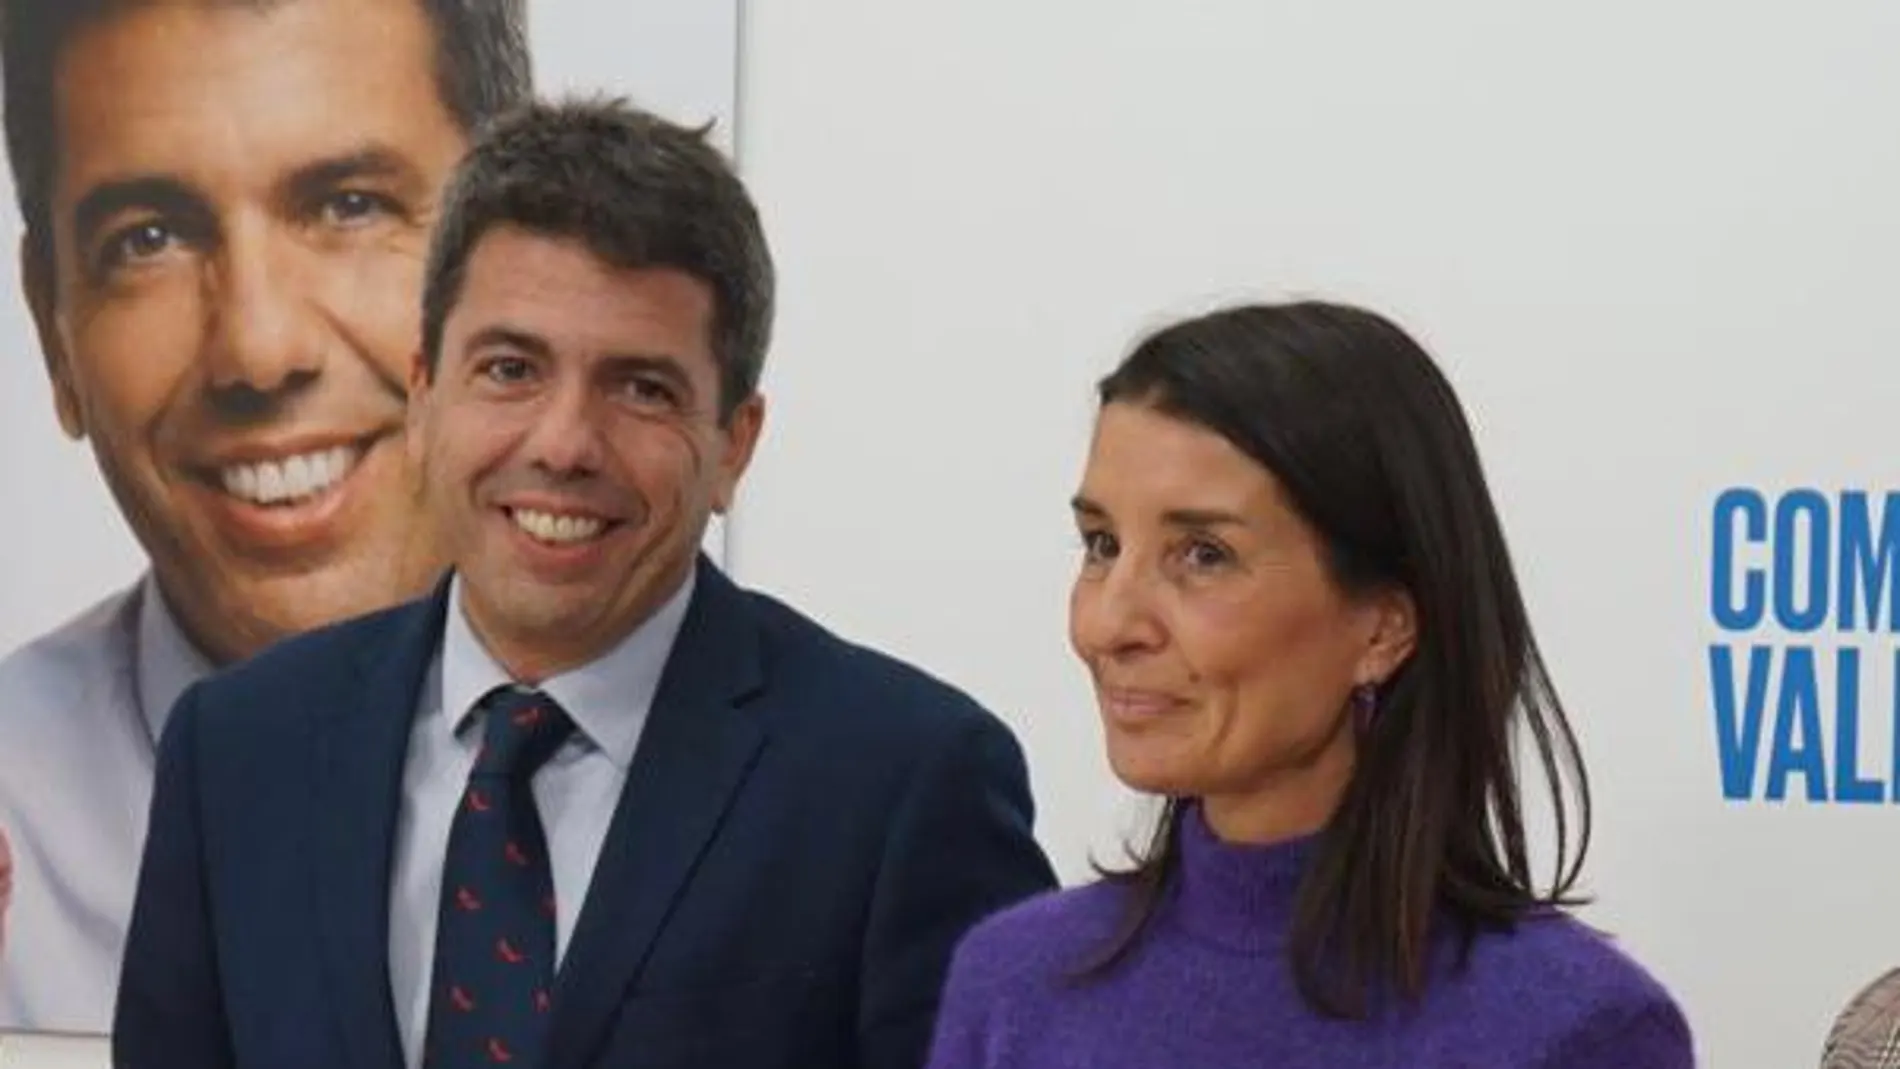 El presidente de la Generalitat valenciana, Carlos Mazón, y la consellera de Hacienda, Ruth Merino